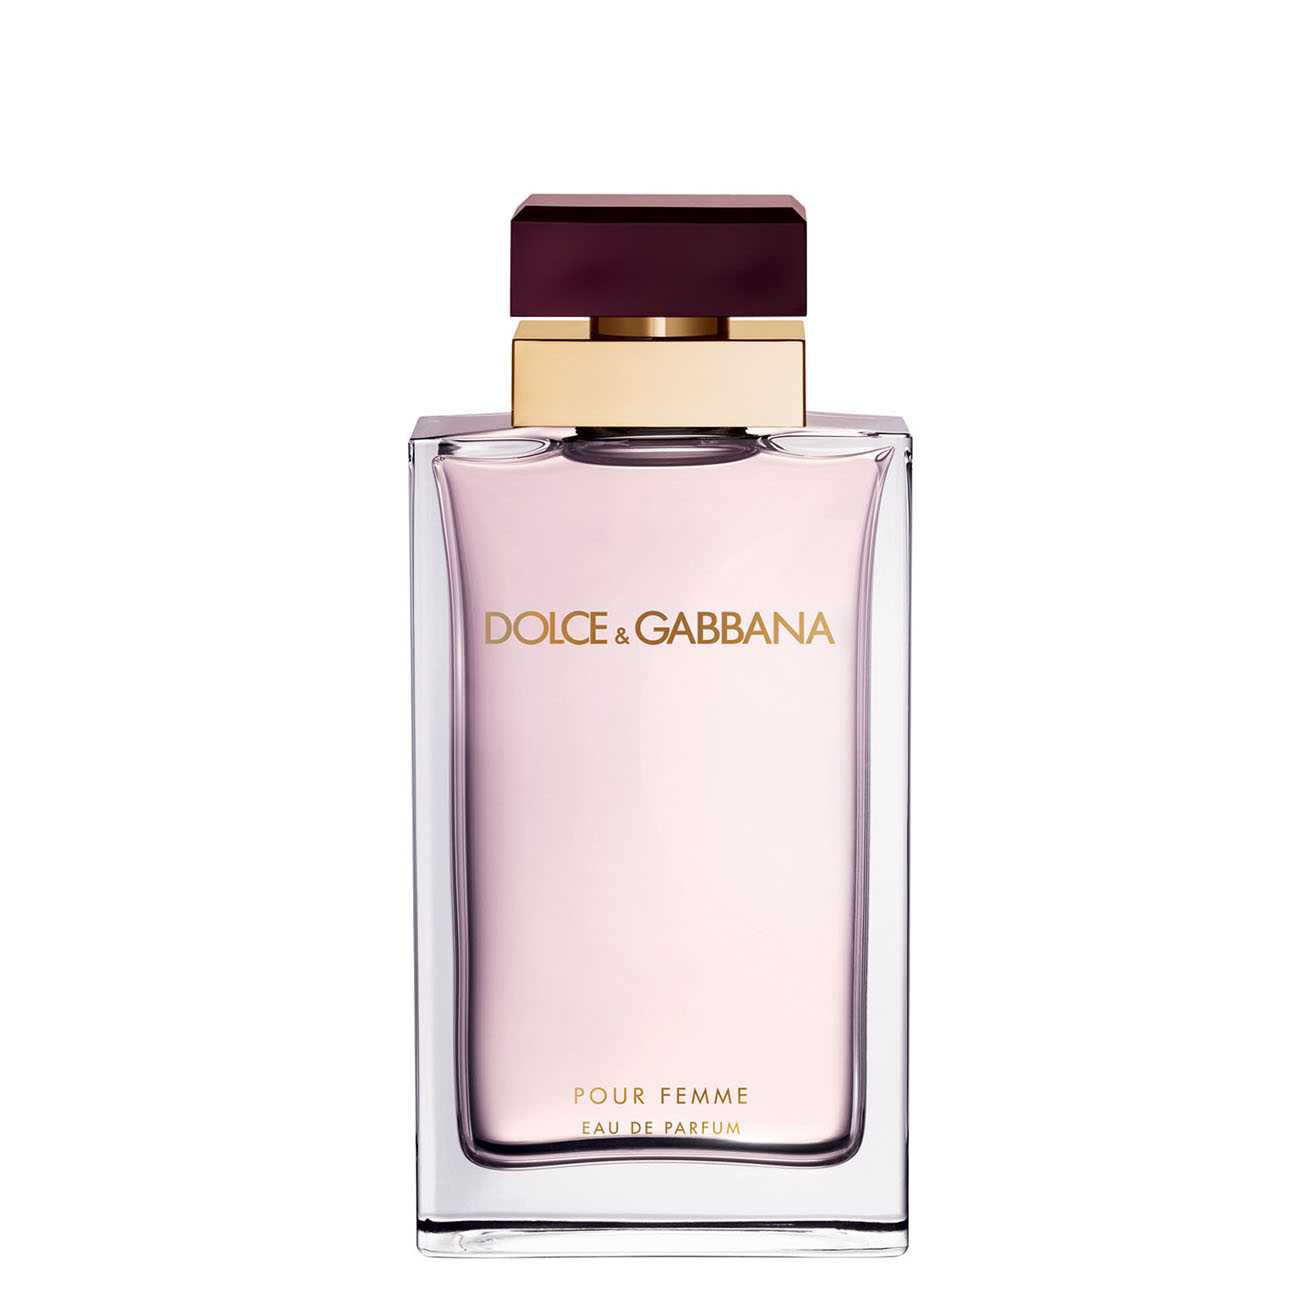 Apa de Parfum Dolce & Gabbana POUR FEMME 100ml cu comanda online